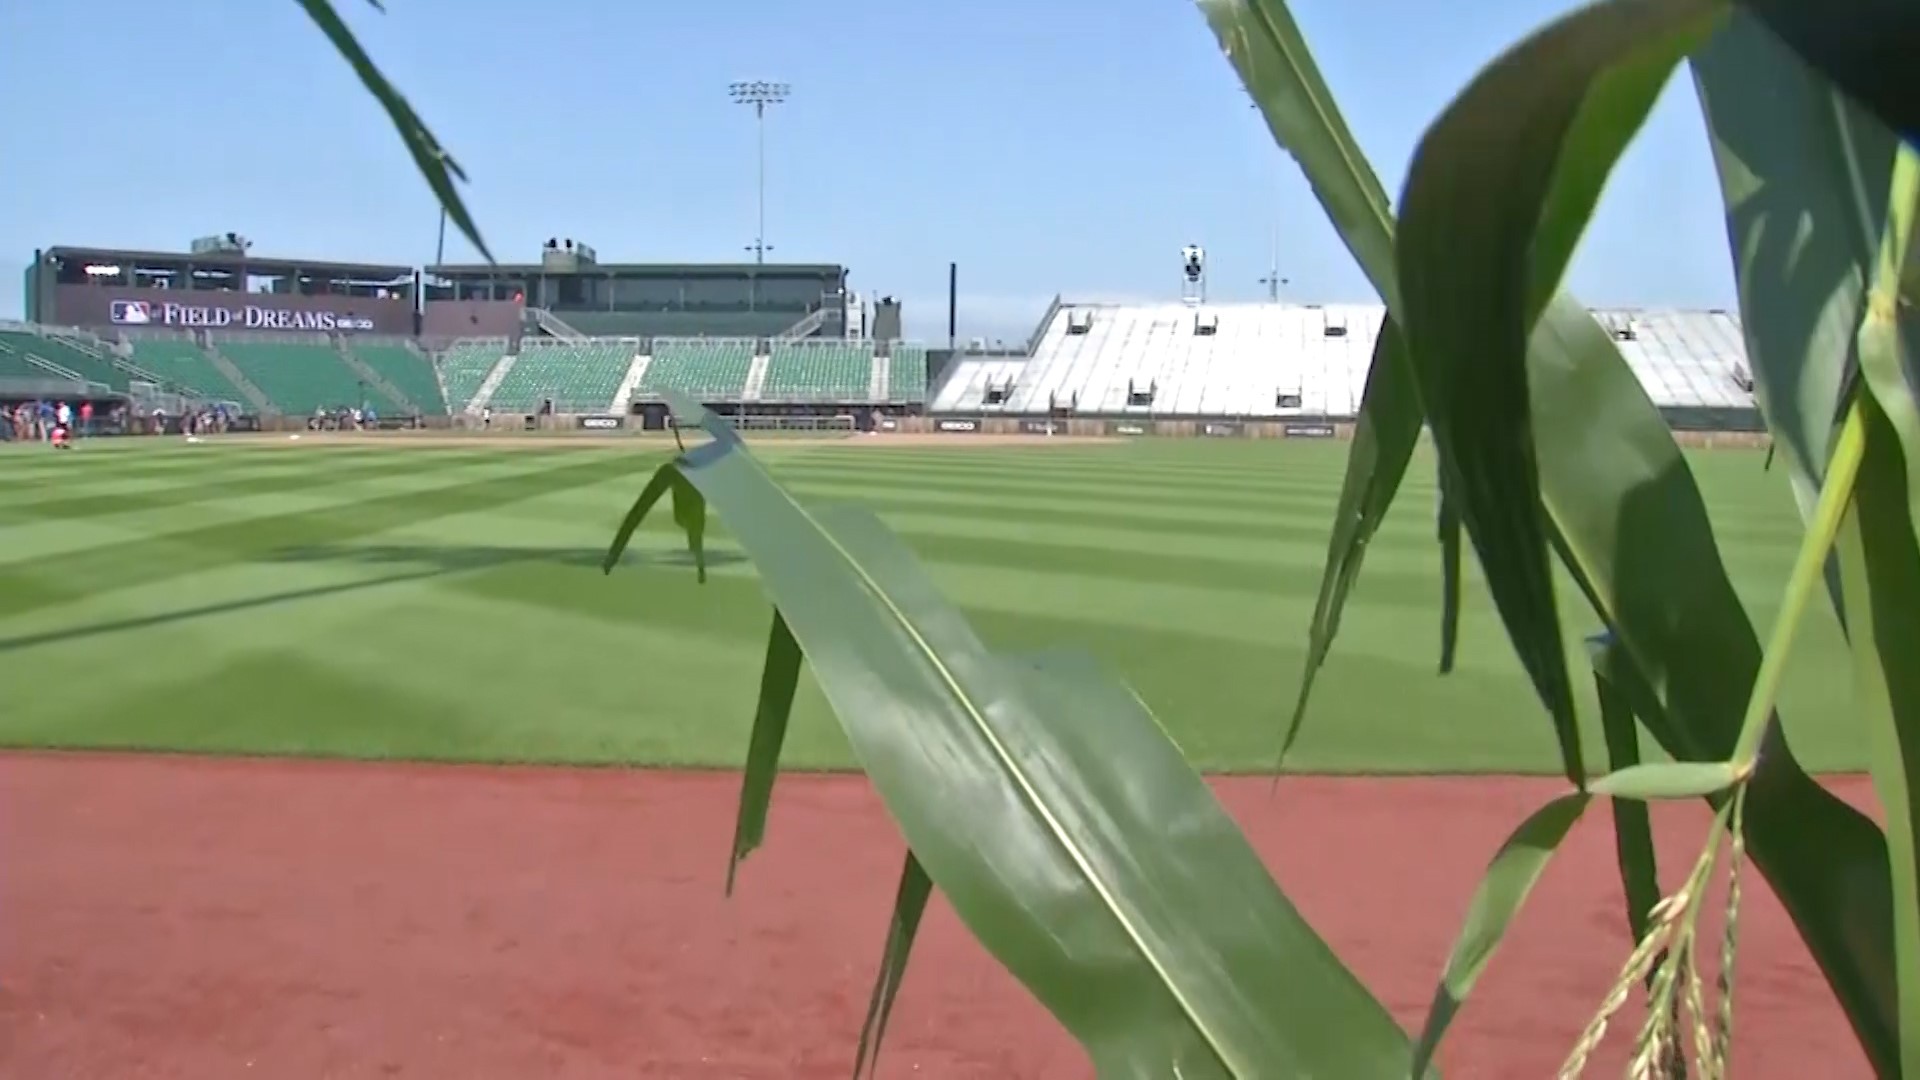 Field of Dreams ballpark takes shape in Iowa  Ballpark Digest